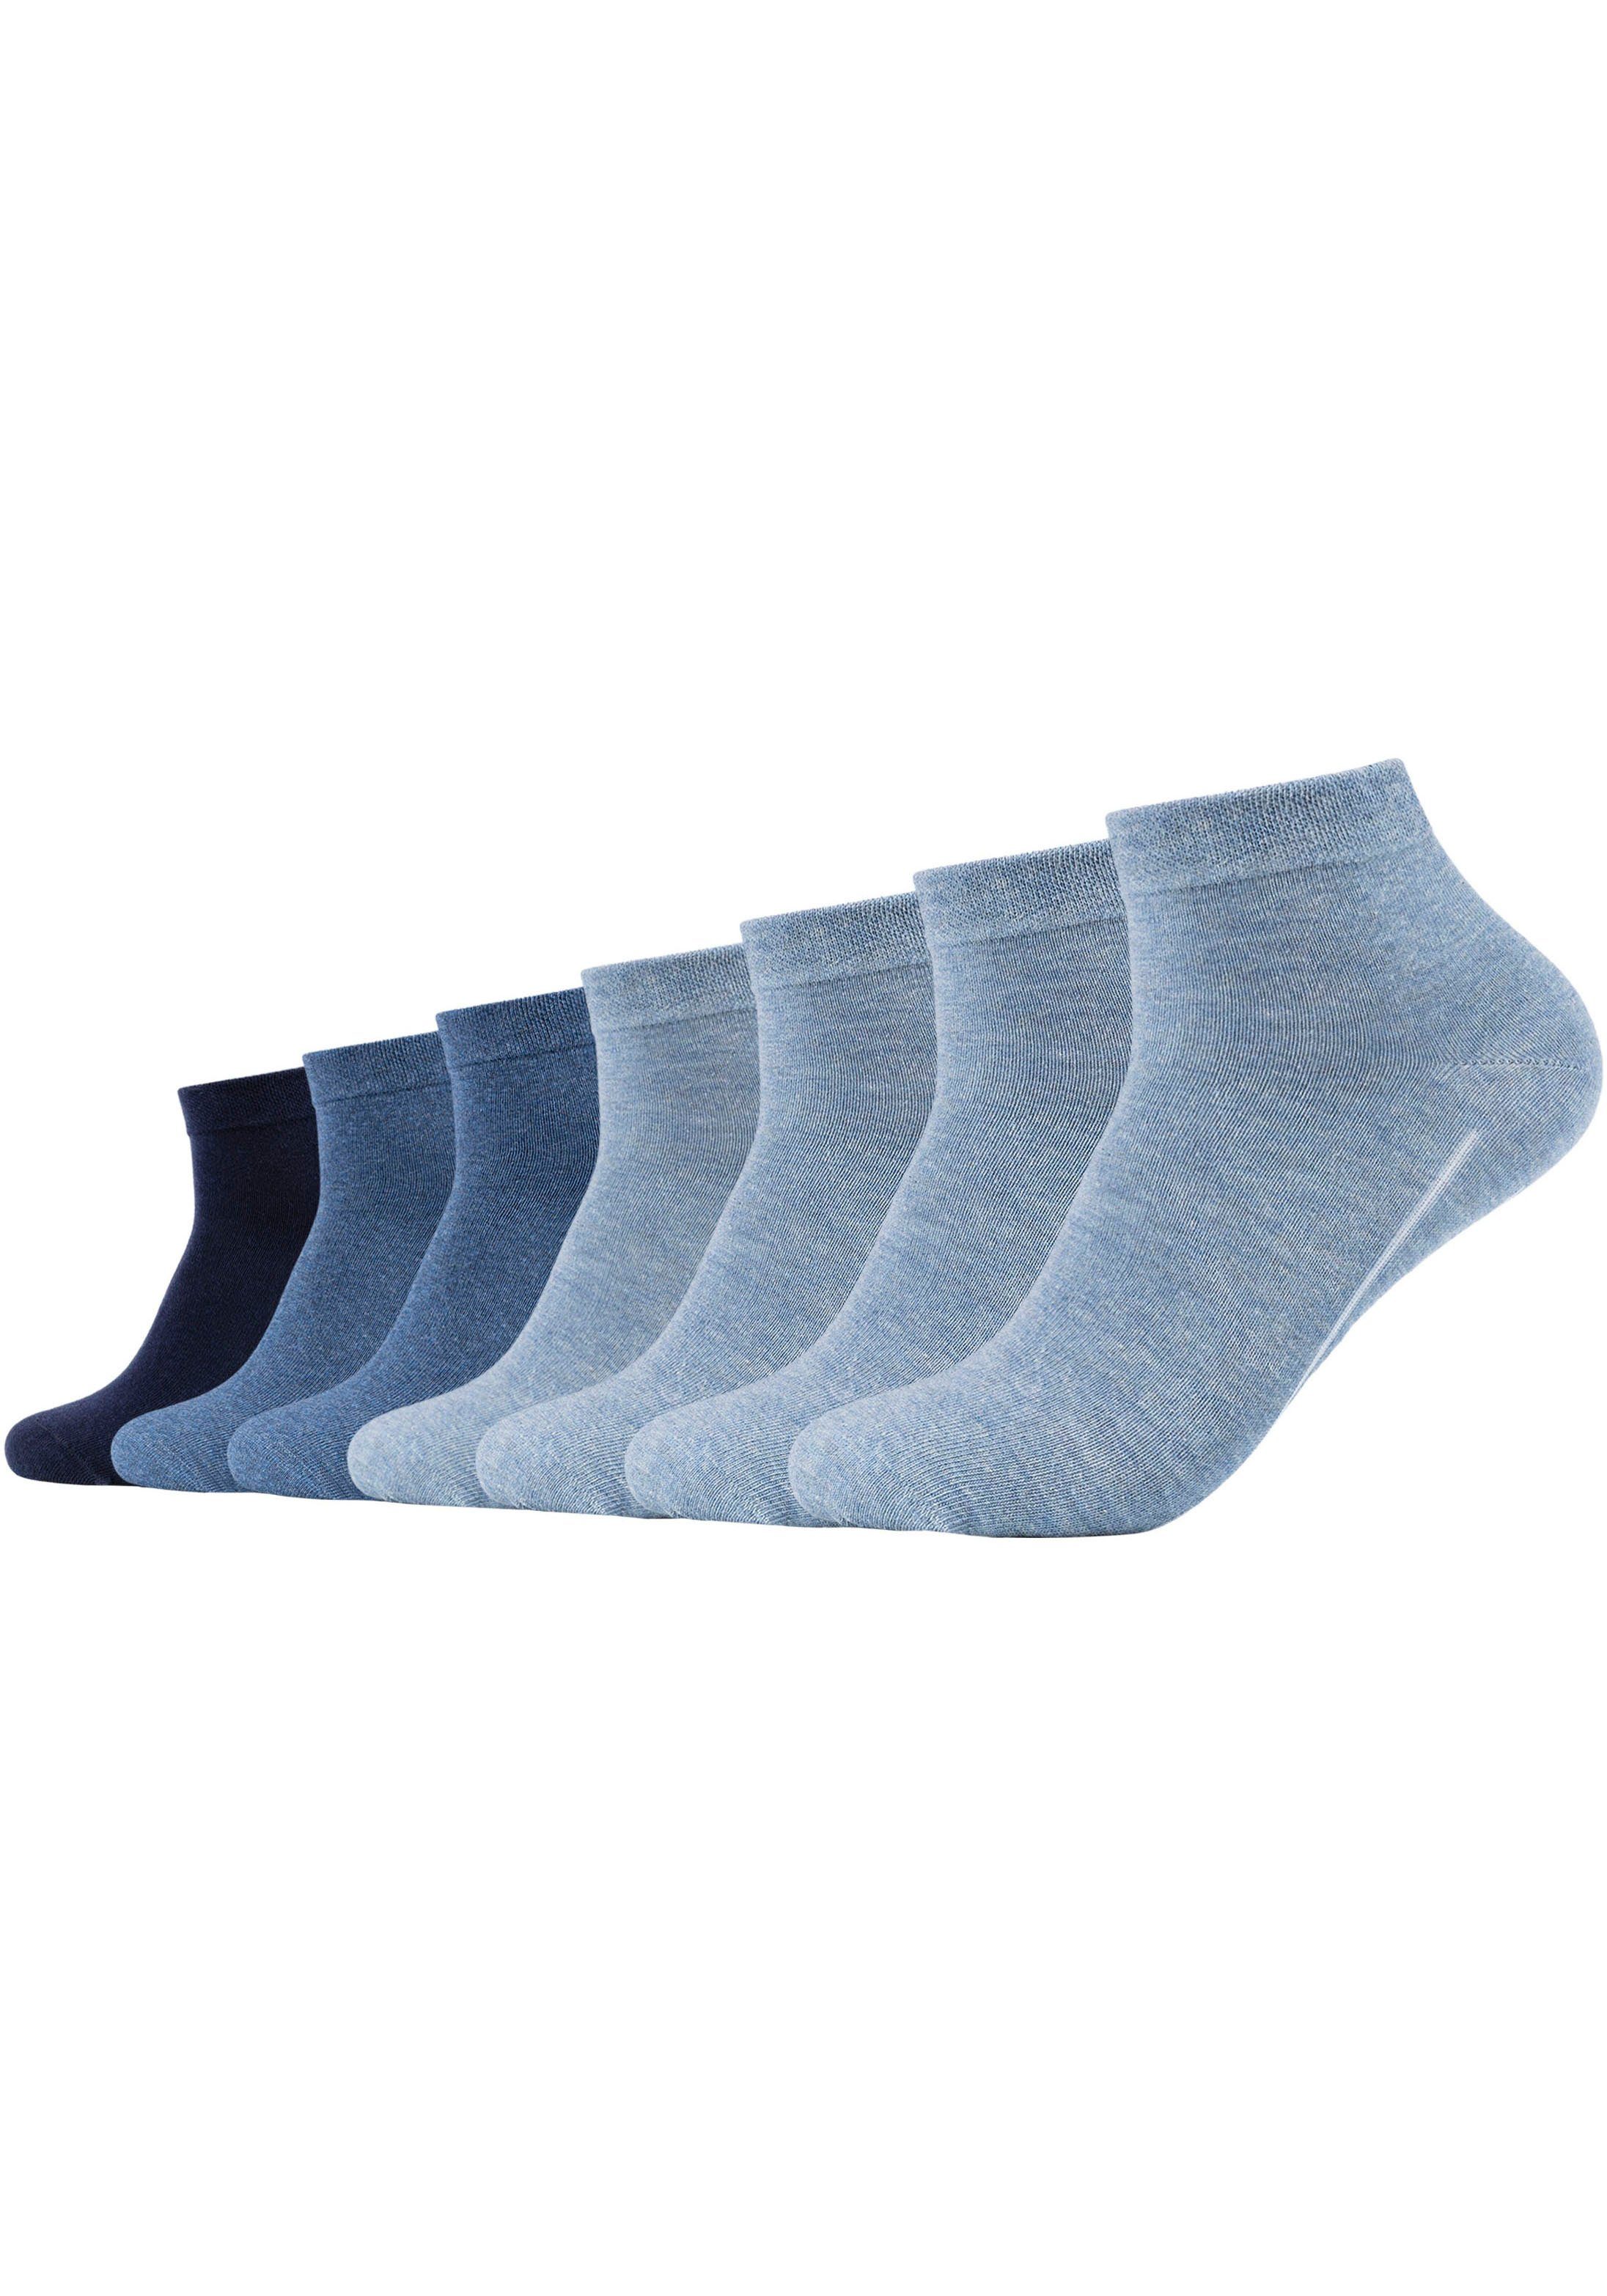 Camano Socken atmungsaktiv ca-soft dank Komfortbund, Klimaregulierend: Baumwollanteil weichem (7-Paar) mit hohem